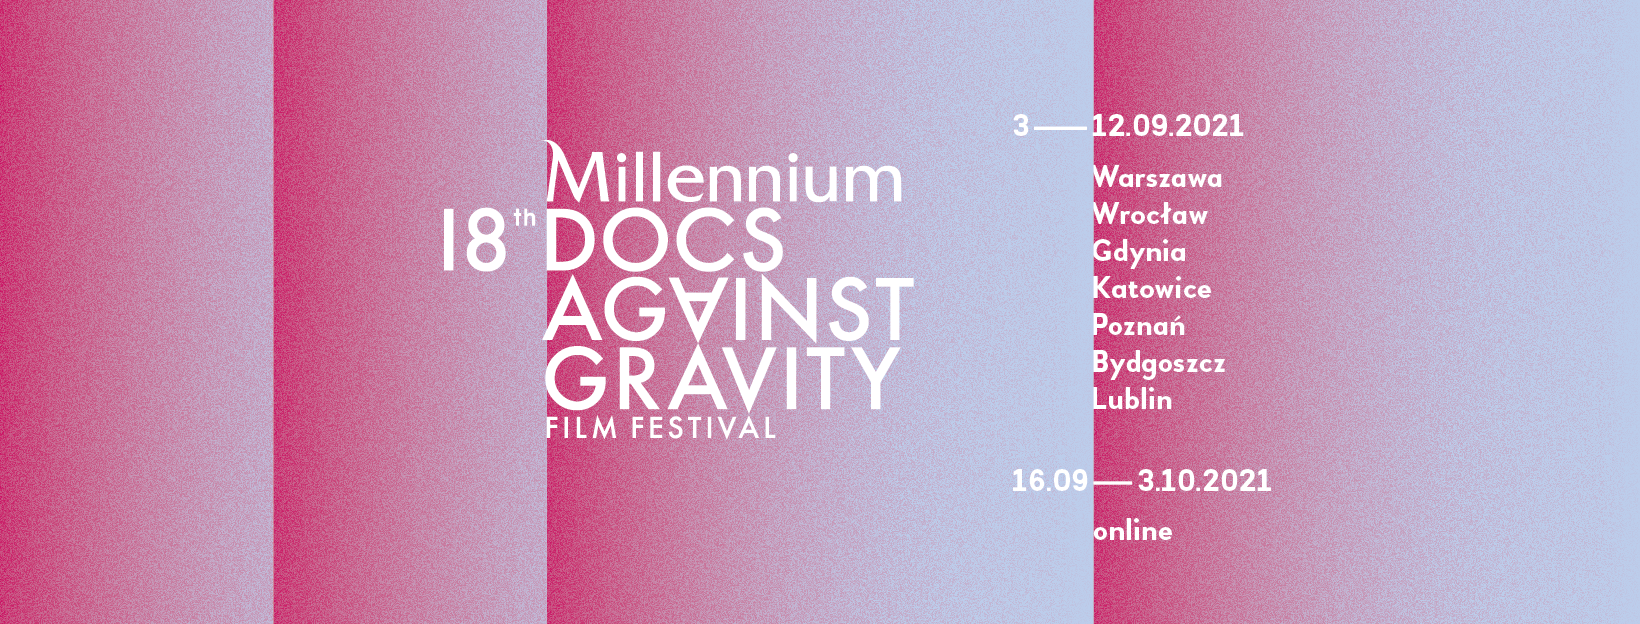 Millennium Docs Against Gravity 2021 - FB: Millennium Docs Against Gravity